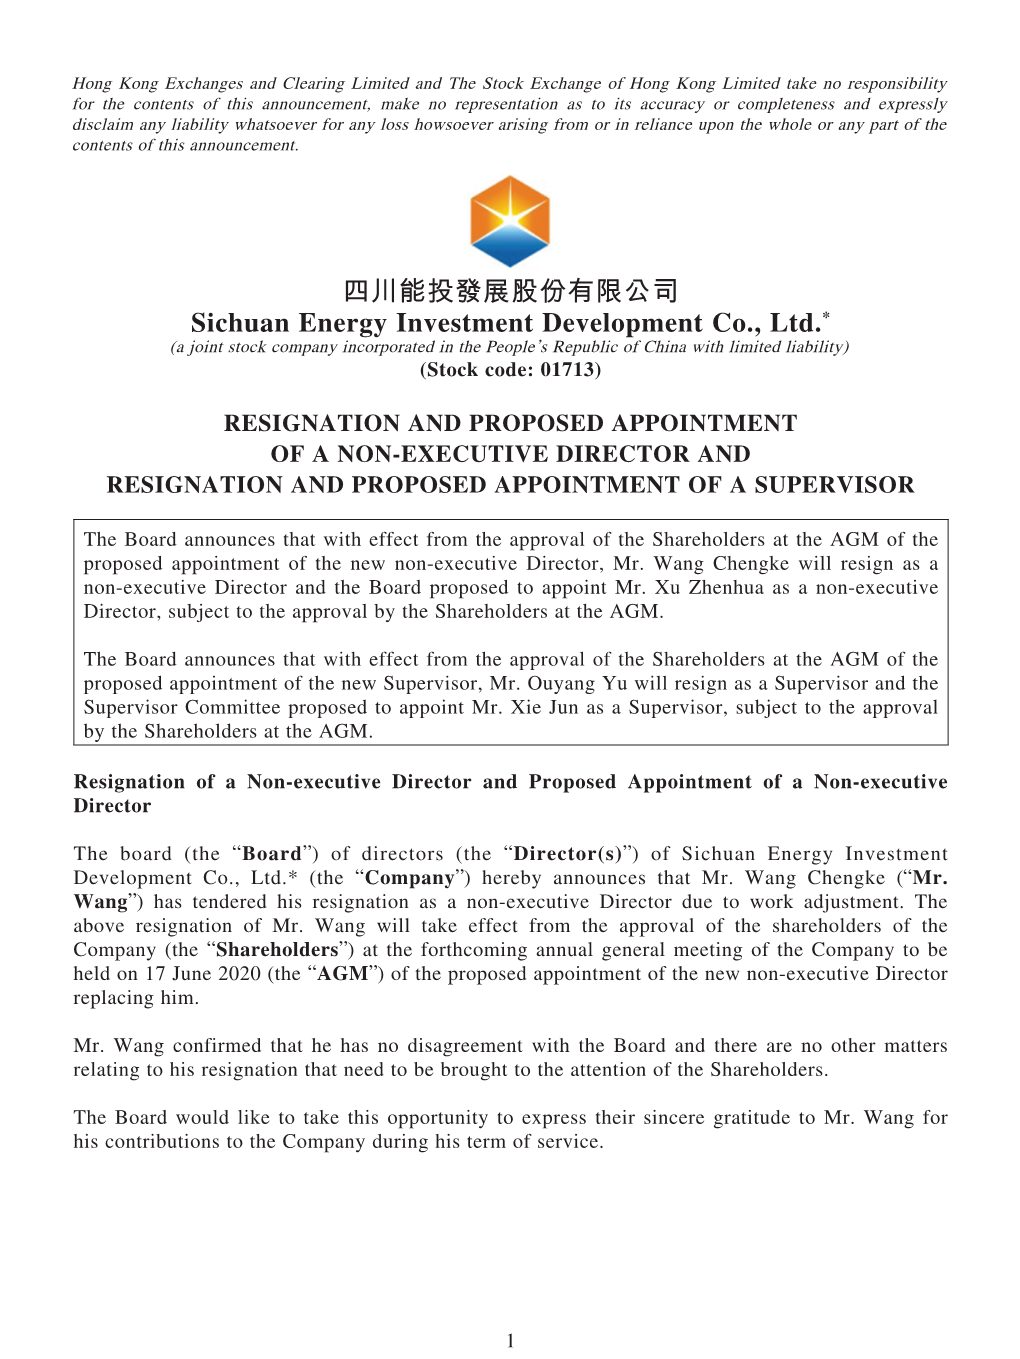 四川能投發展股份有限公司 Sichuan Energy Investment Development Co., Ltd